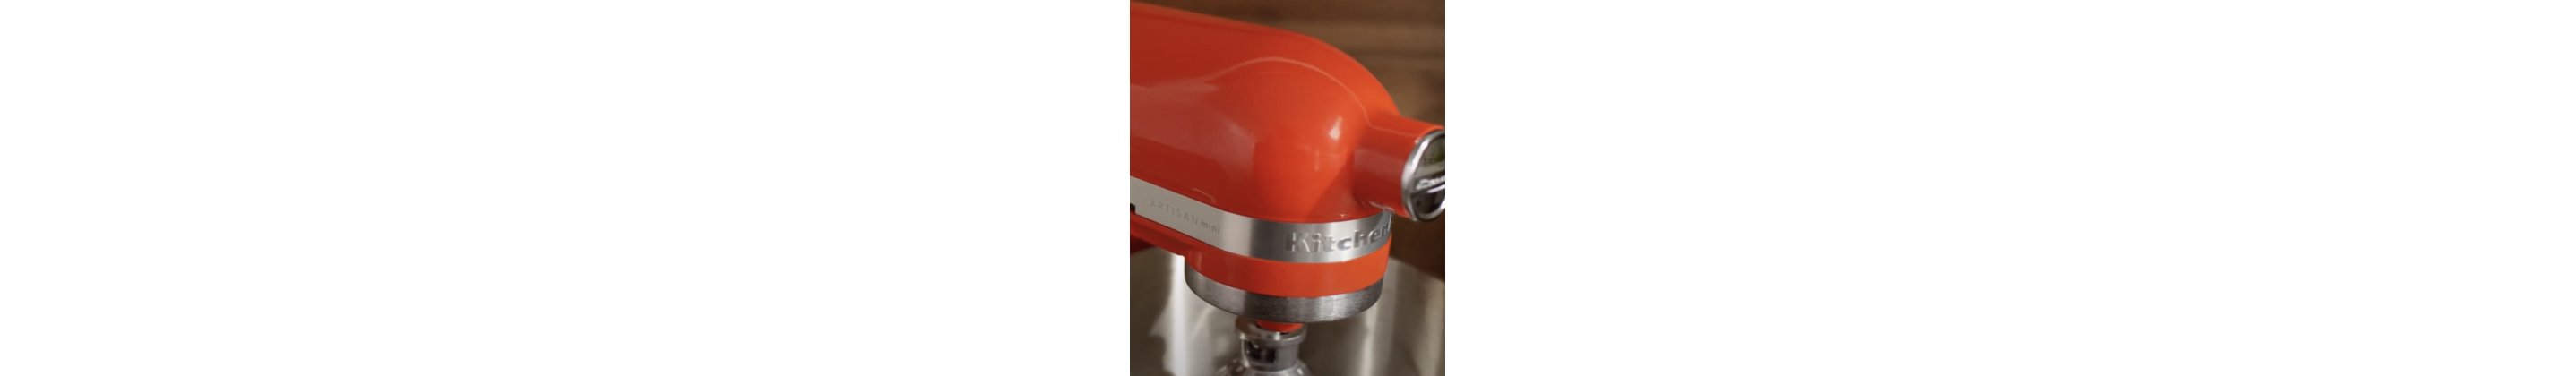 KitchenAid Artisan Mini 3.5 Quart Tilt-Head Stand Mixer - KSM3316X - Empire  Red